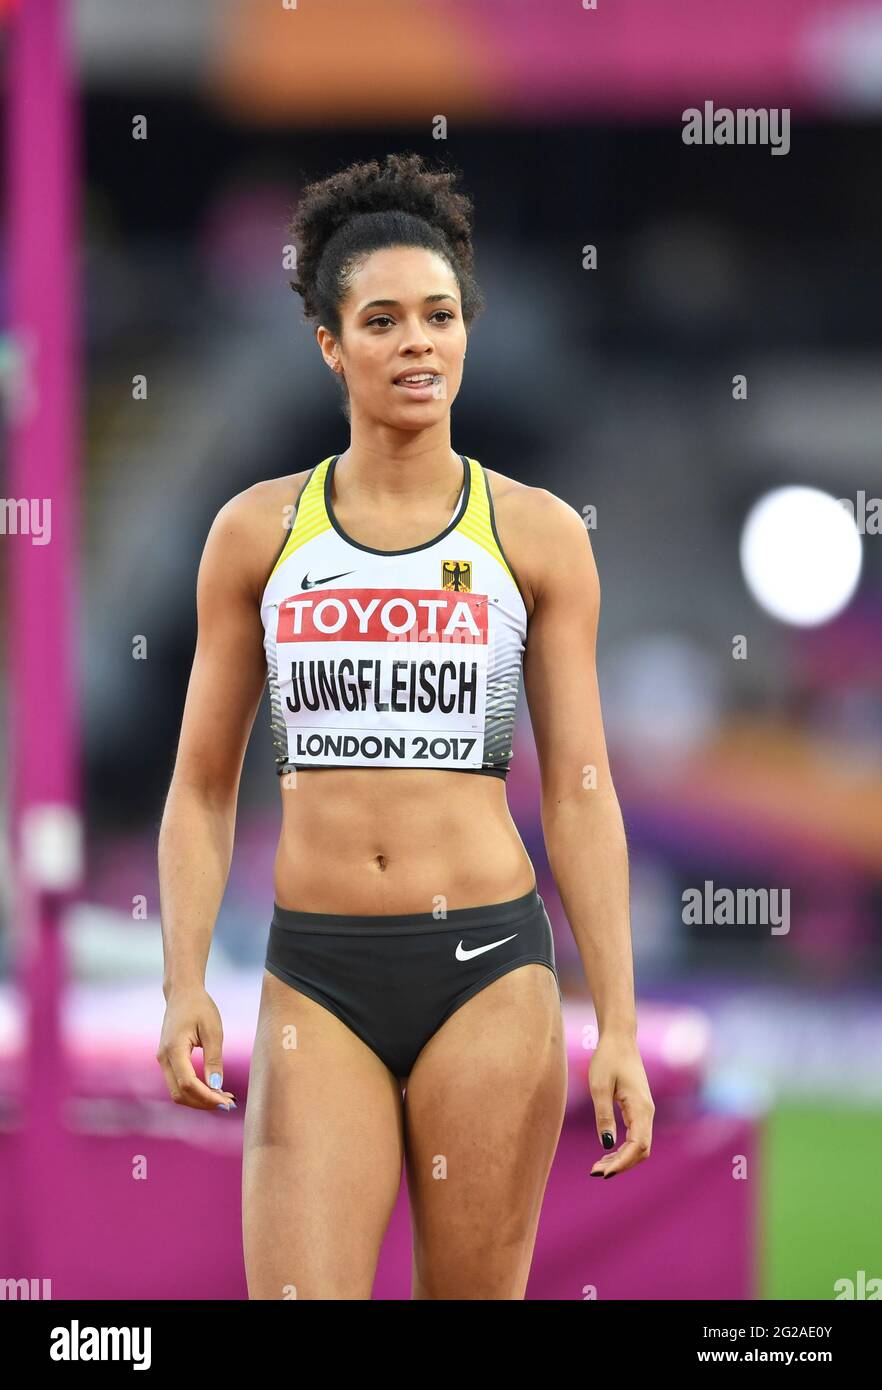 Marie-Laurence Jungfleisch (Deutschland). Frauen Im Hochsprung, Finale.  Leichtathletik-Weltmeisterschaften der IAAF London 2017 Stockfotografie -  Alamy